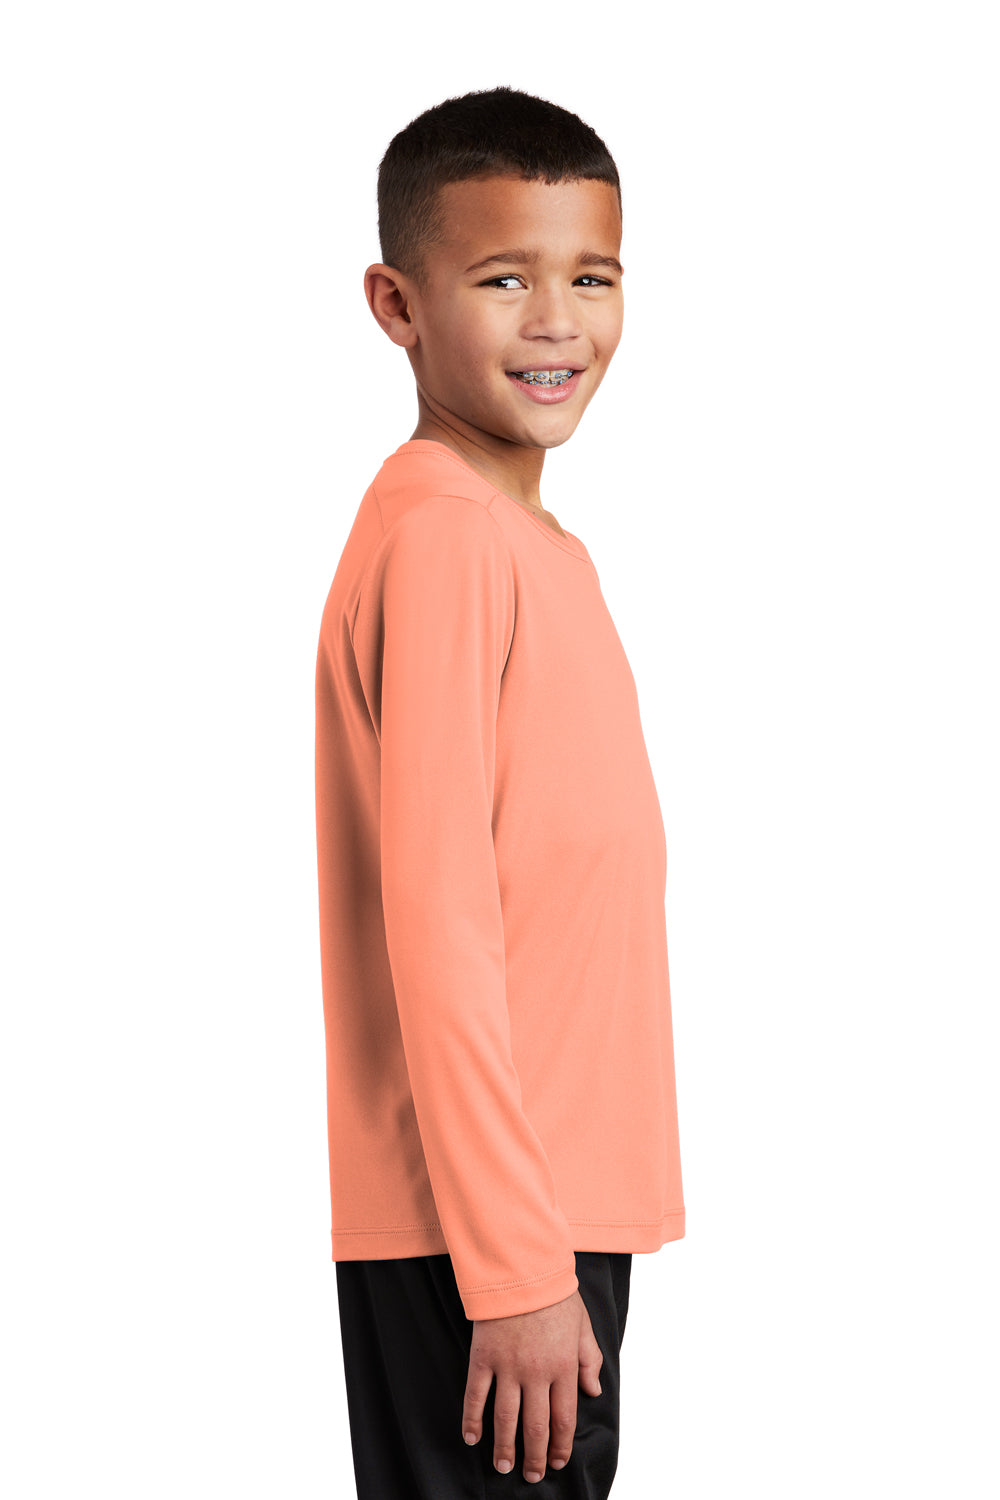 Sport-Tek Youth Long Sleeve Crewneck T-Shirt Soft Coral Orange Side